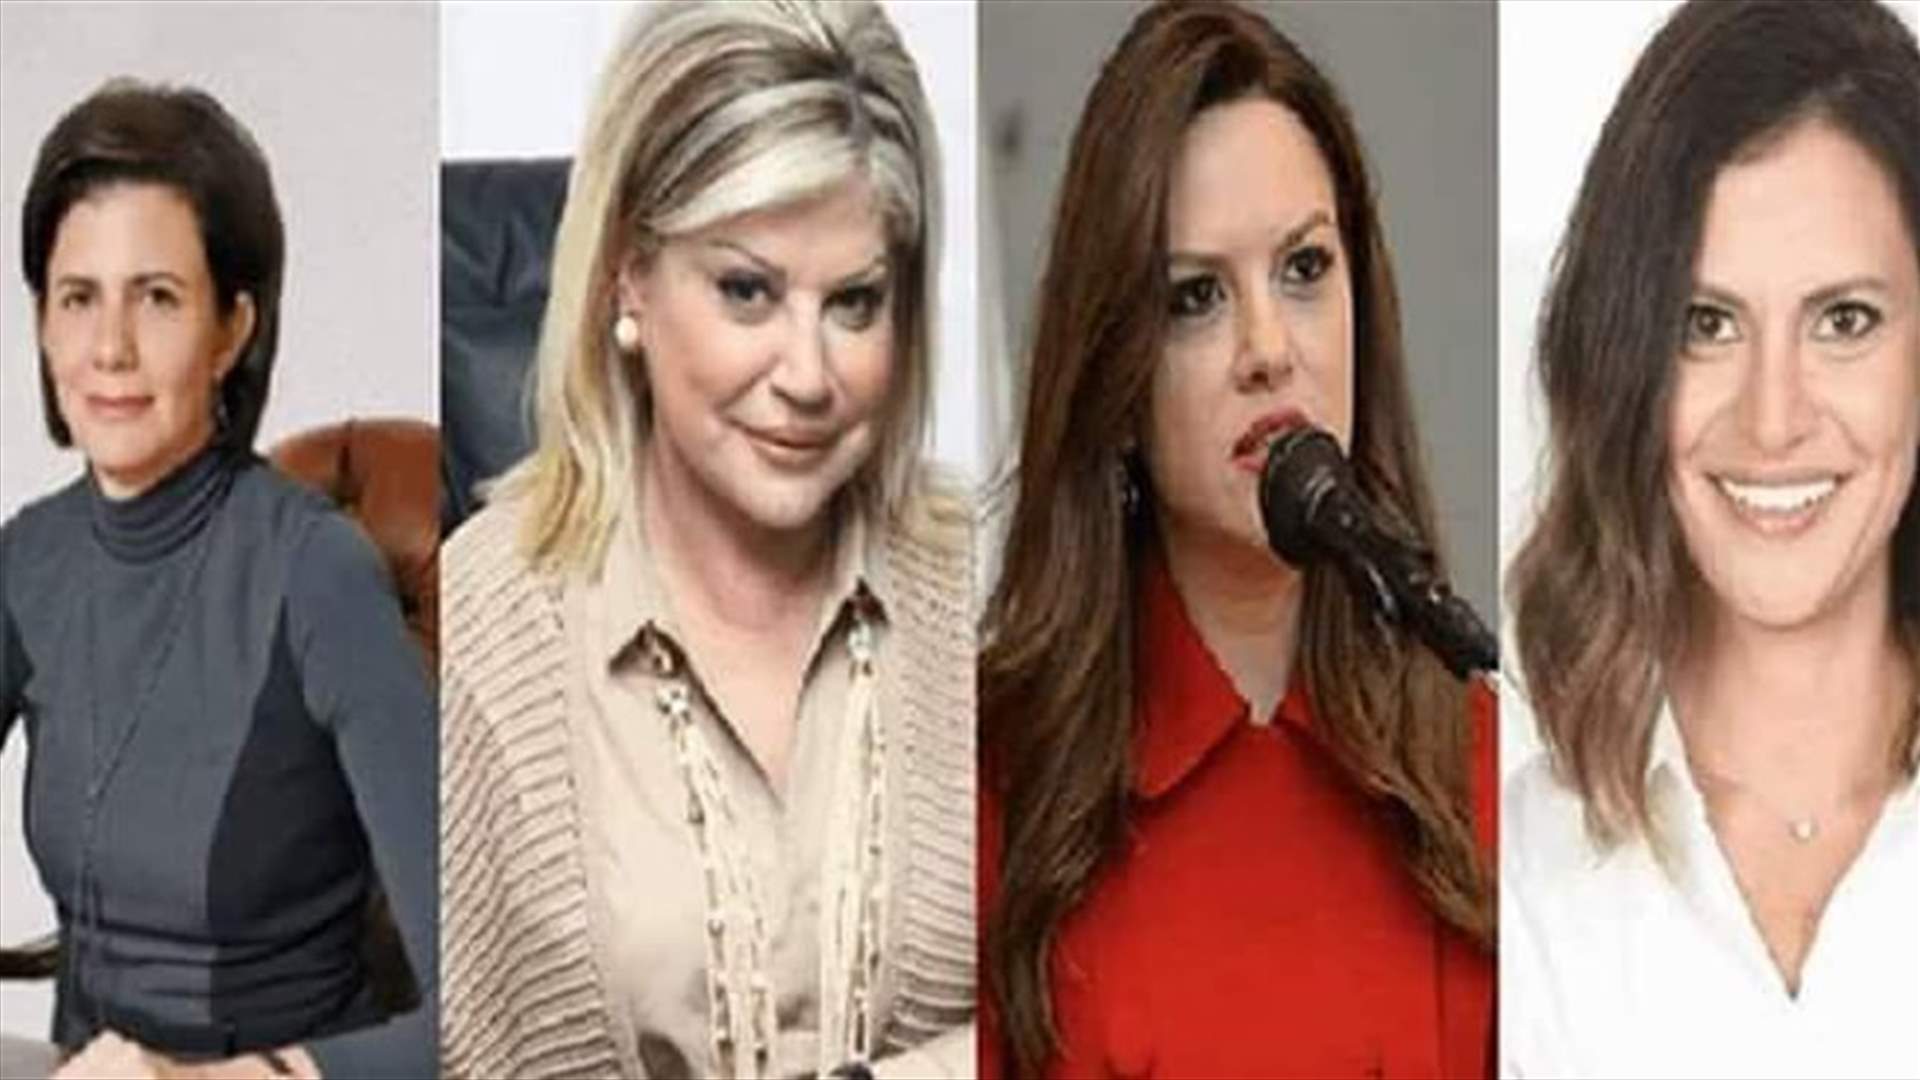 للمرة الأولى في تاريخ لبنان... 4 نساء في الحكومة بينهن وزيرة للداخلية